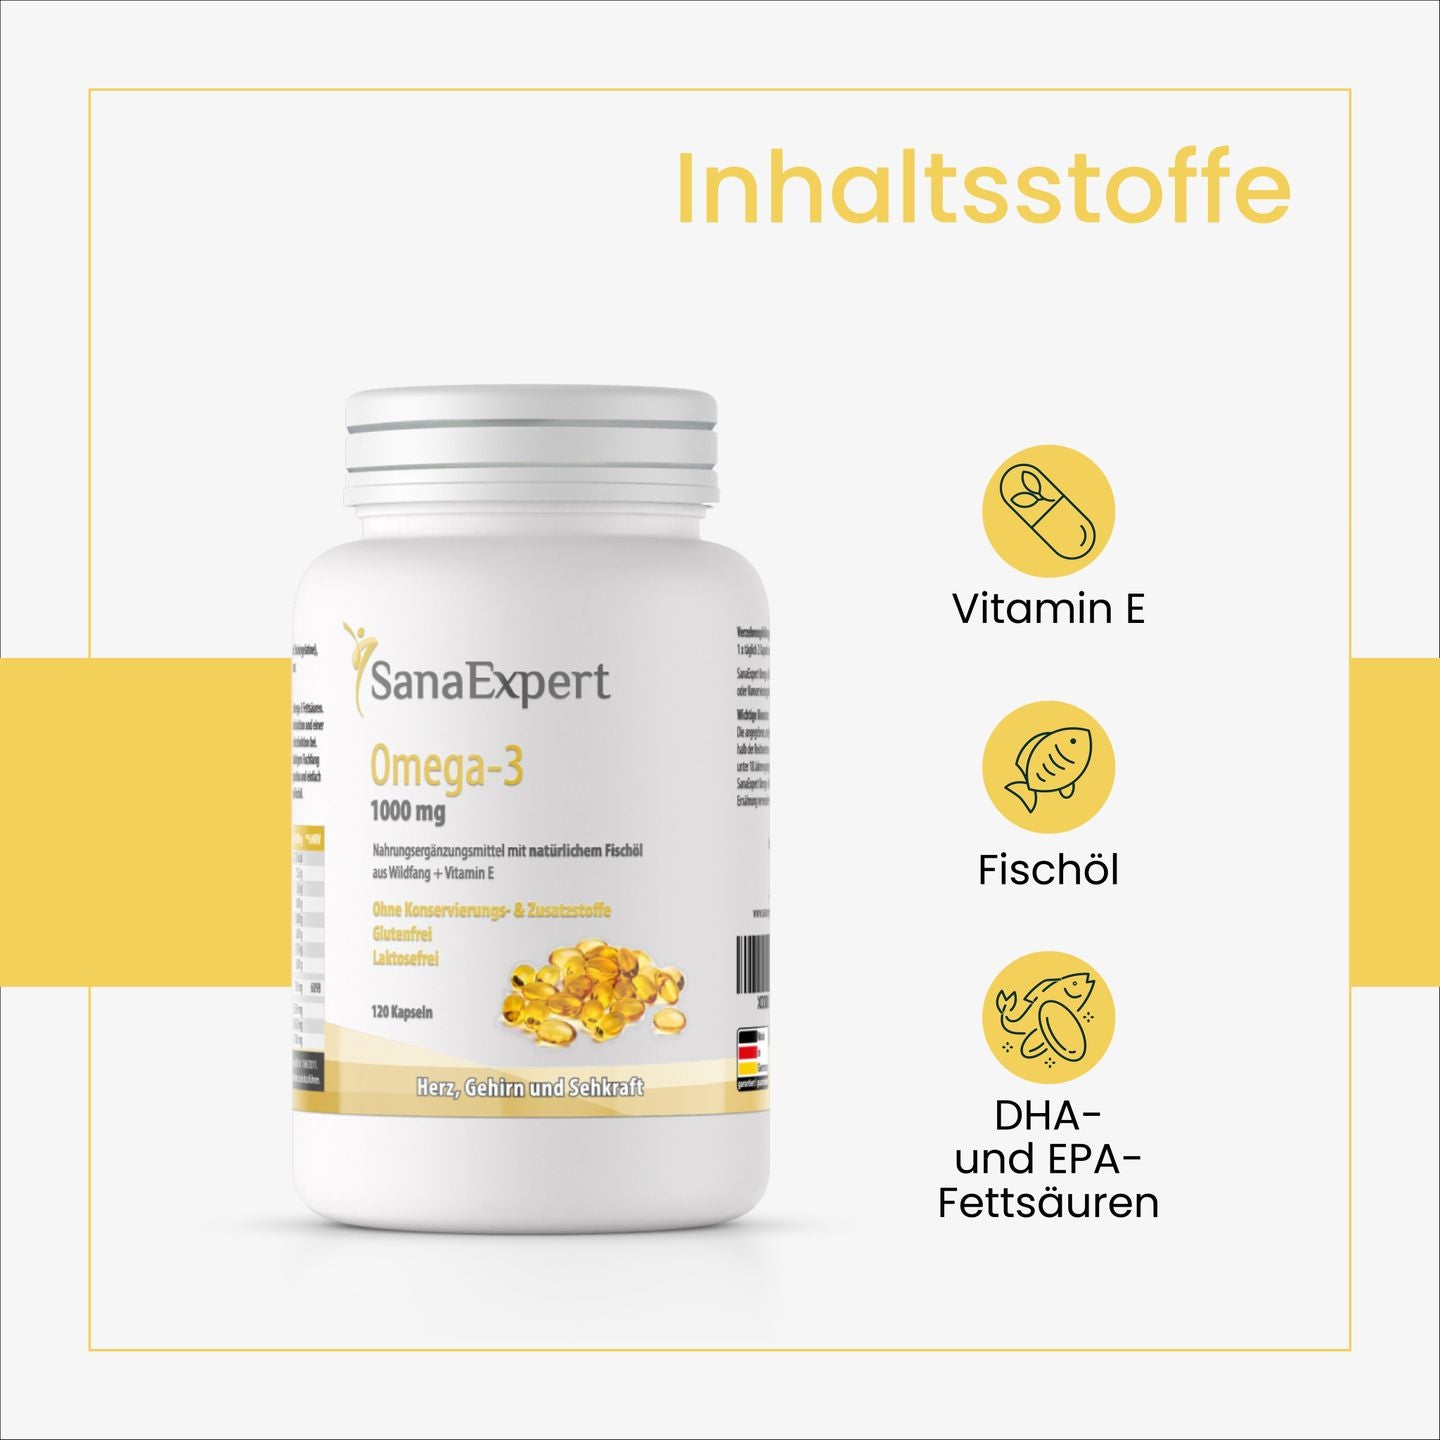 SanaExpert Omega-3 Flasche mit Schwerpunkt auf die wesentlichen Inhaltsstoffe wie Vitamin E, Fischöl sowie DHA- und EPA-Fettsäuren, präsentiert auf einem minimalistischen gelben Hintergrund.